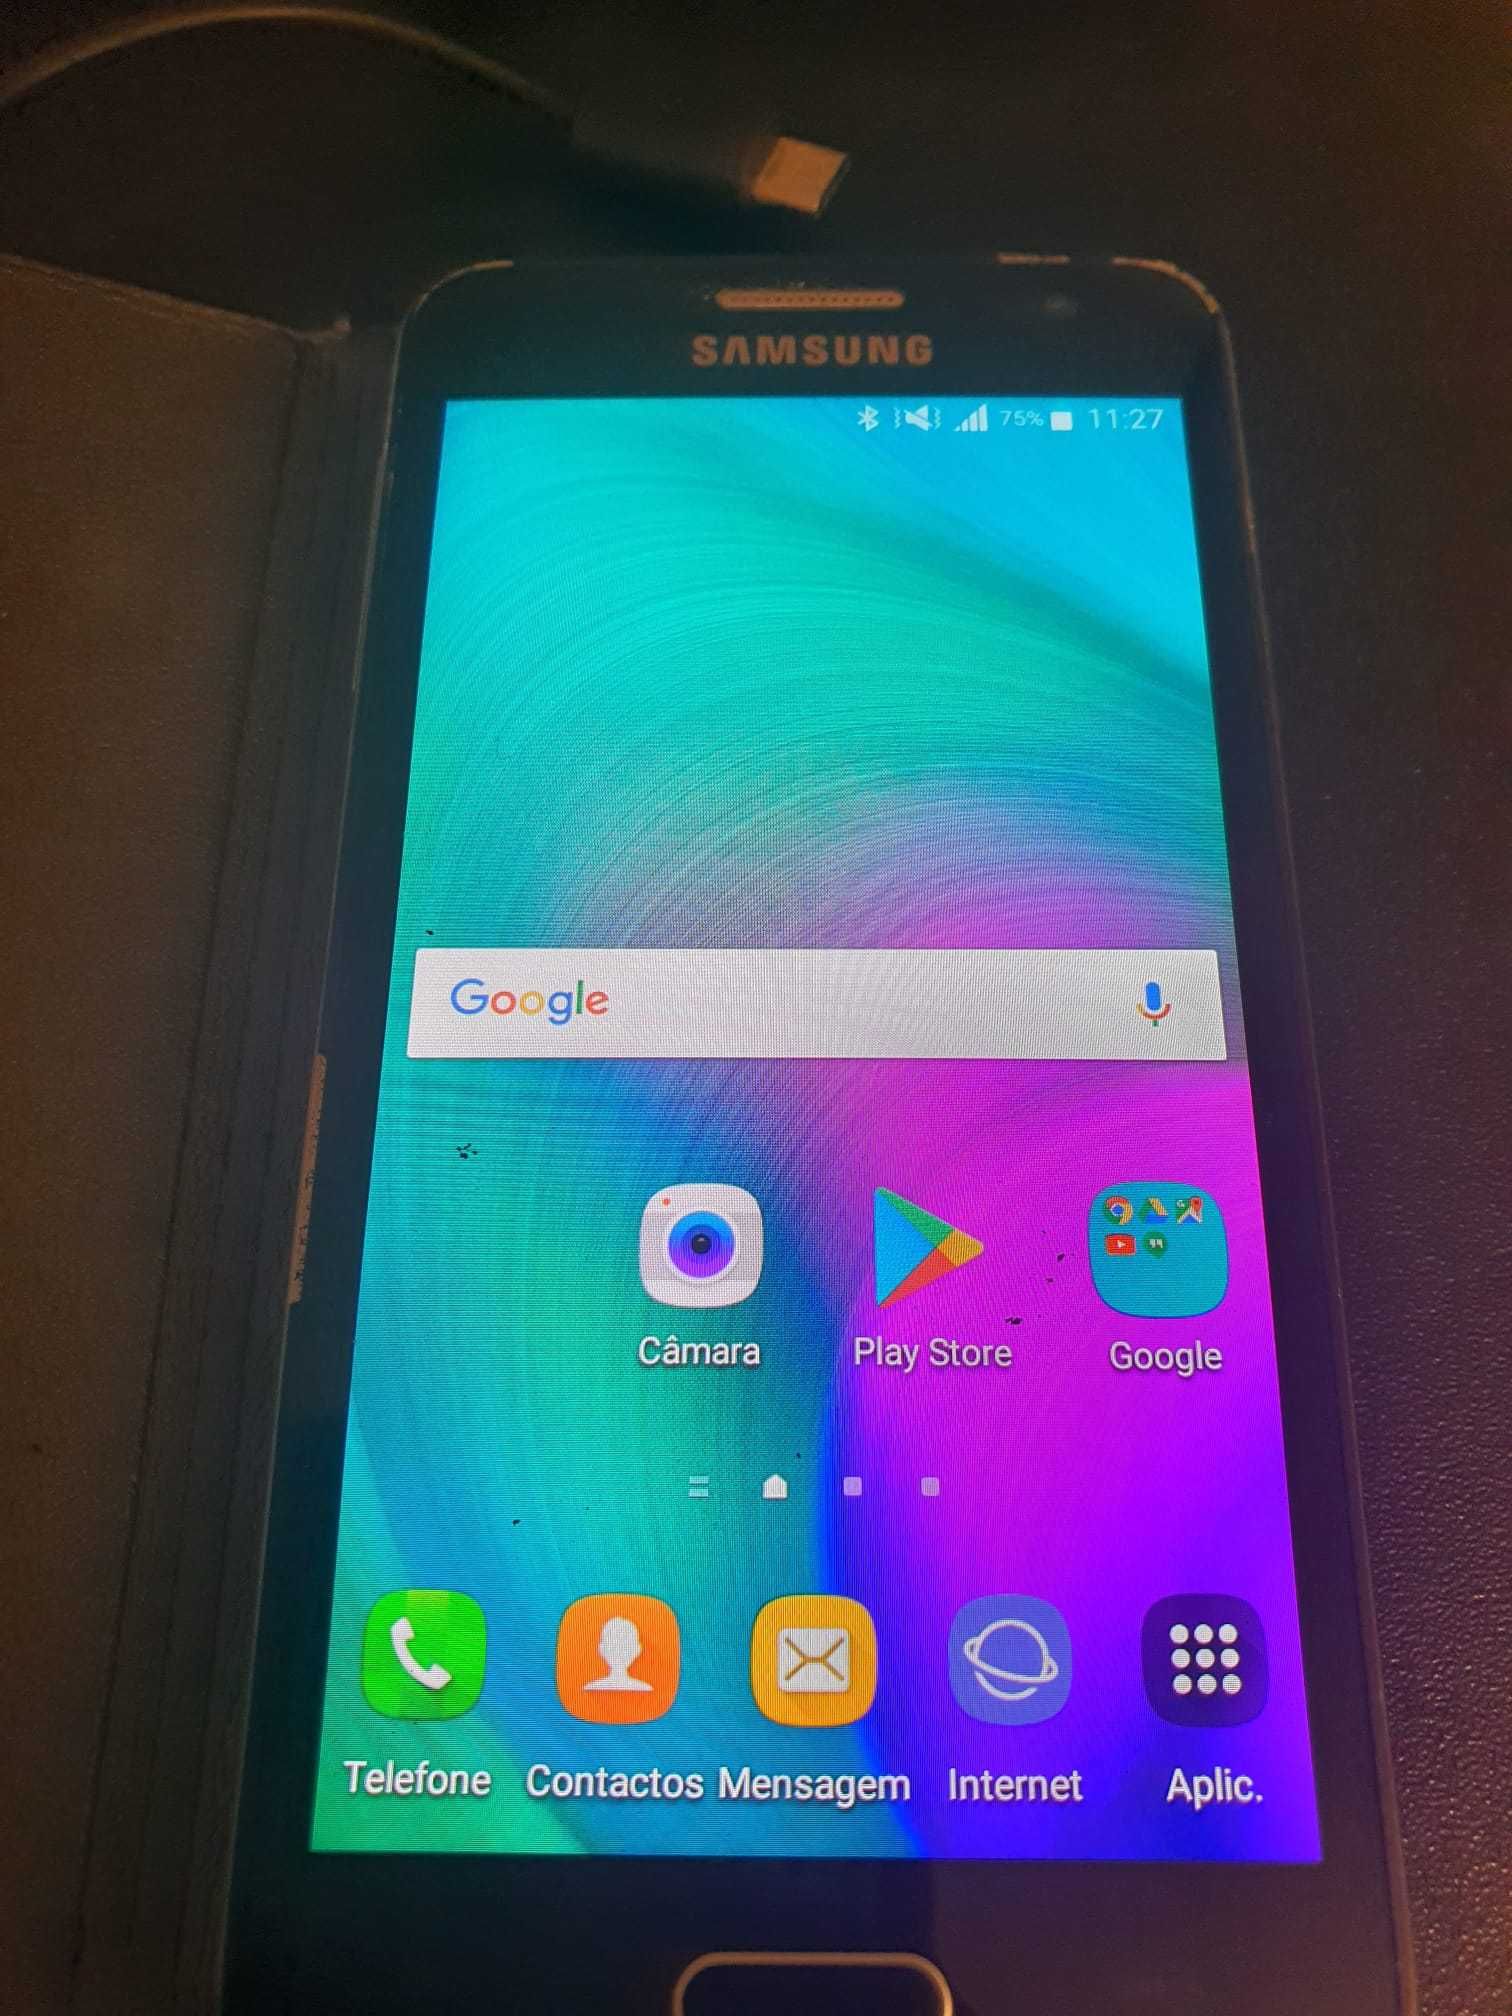 Samsung Galaxy A3 Como Novo Completo com Caixa e Acessórios Originais